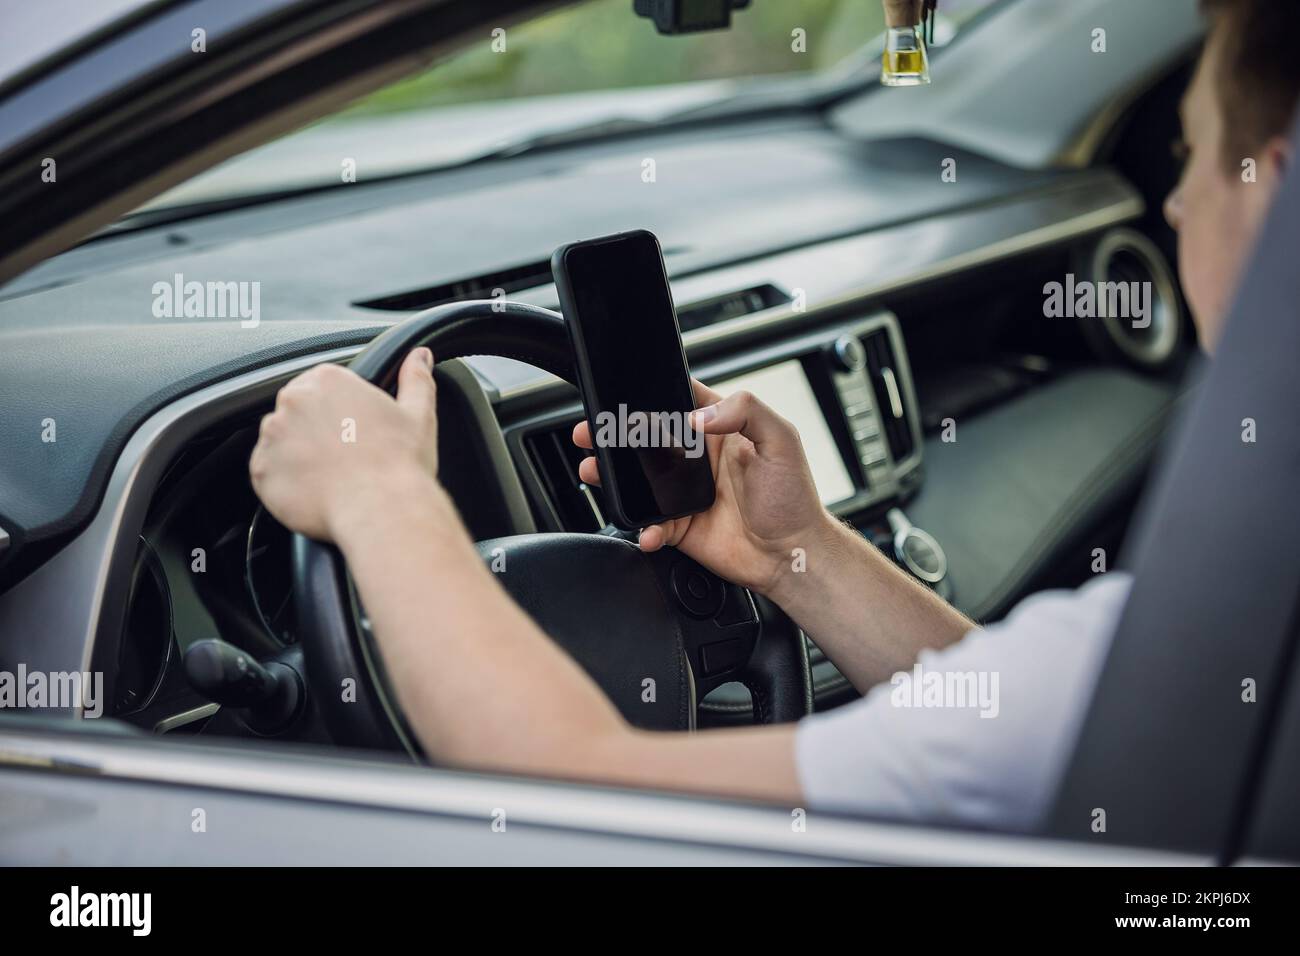 Ein Gelegenheitsfahrer, der vor dem Lenkrad von seinem Telefon abgelenkt wurde und sein Smartphone während der Fahrt mit einer Hand benutzte. Risiko- und Gefahrenlage Stockfoto